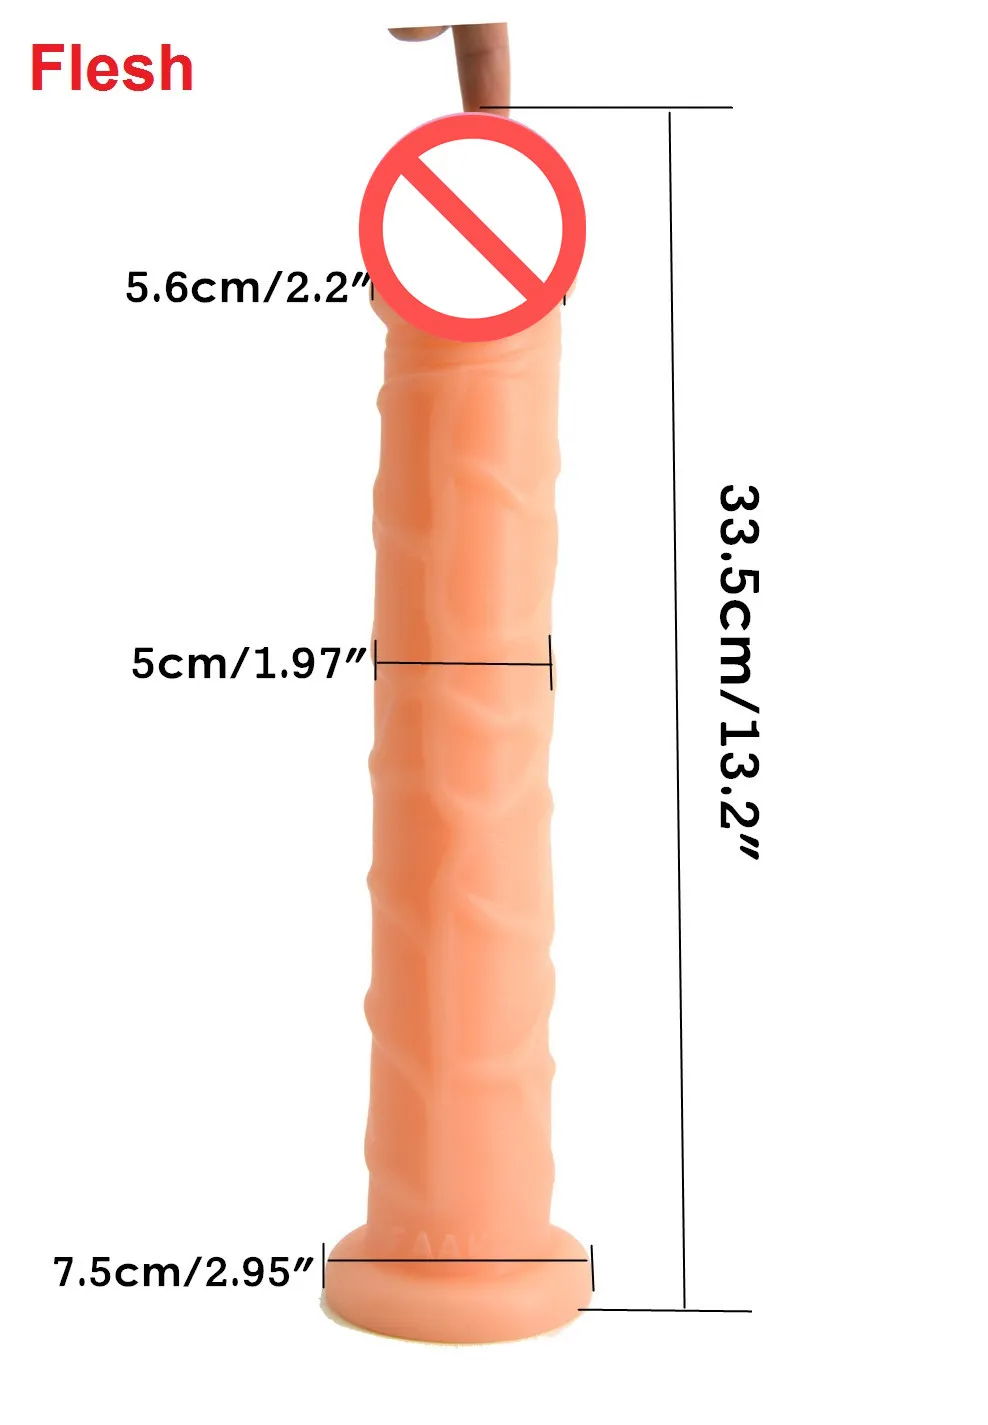 Gerçekçi 33 cm Uzun Yapay Penis Vantuz Ile Yapay Penis Dick Vajina Fiş G Spot Kadınlar Için Kadın Mastürbasyon Seks Oyuncak Starulate 5 c